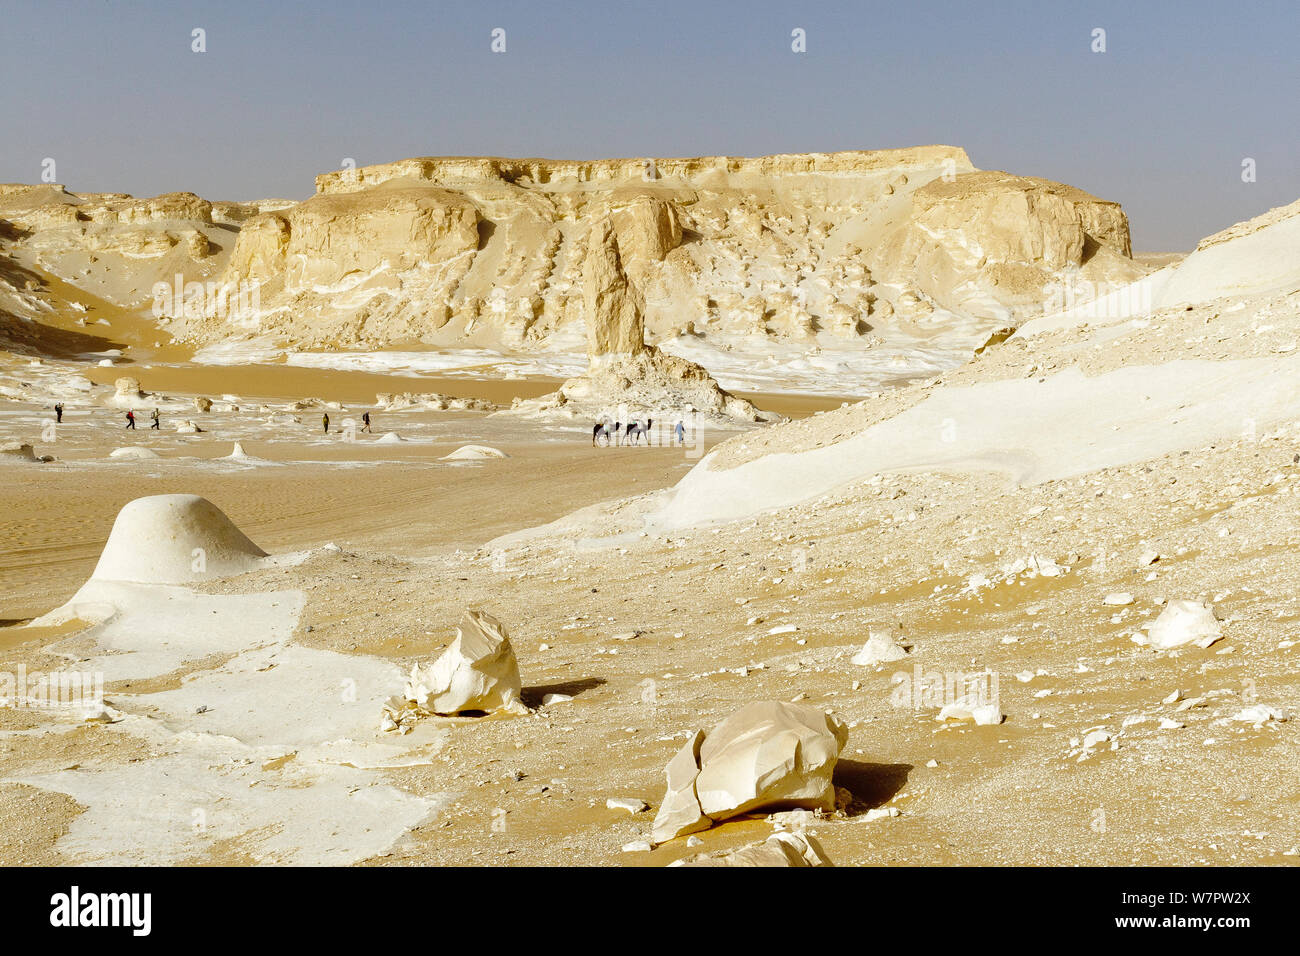 La gente di trekking con i cammelli dromedario (Camelus dromedarius) attraverso chalk formazioni rocciose creato da tempeste di sabbia, bianco deserto del Sahara, Egitto, Febbraio 2009 Foto Stock